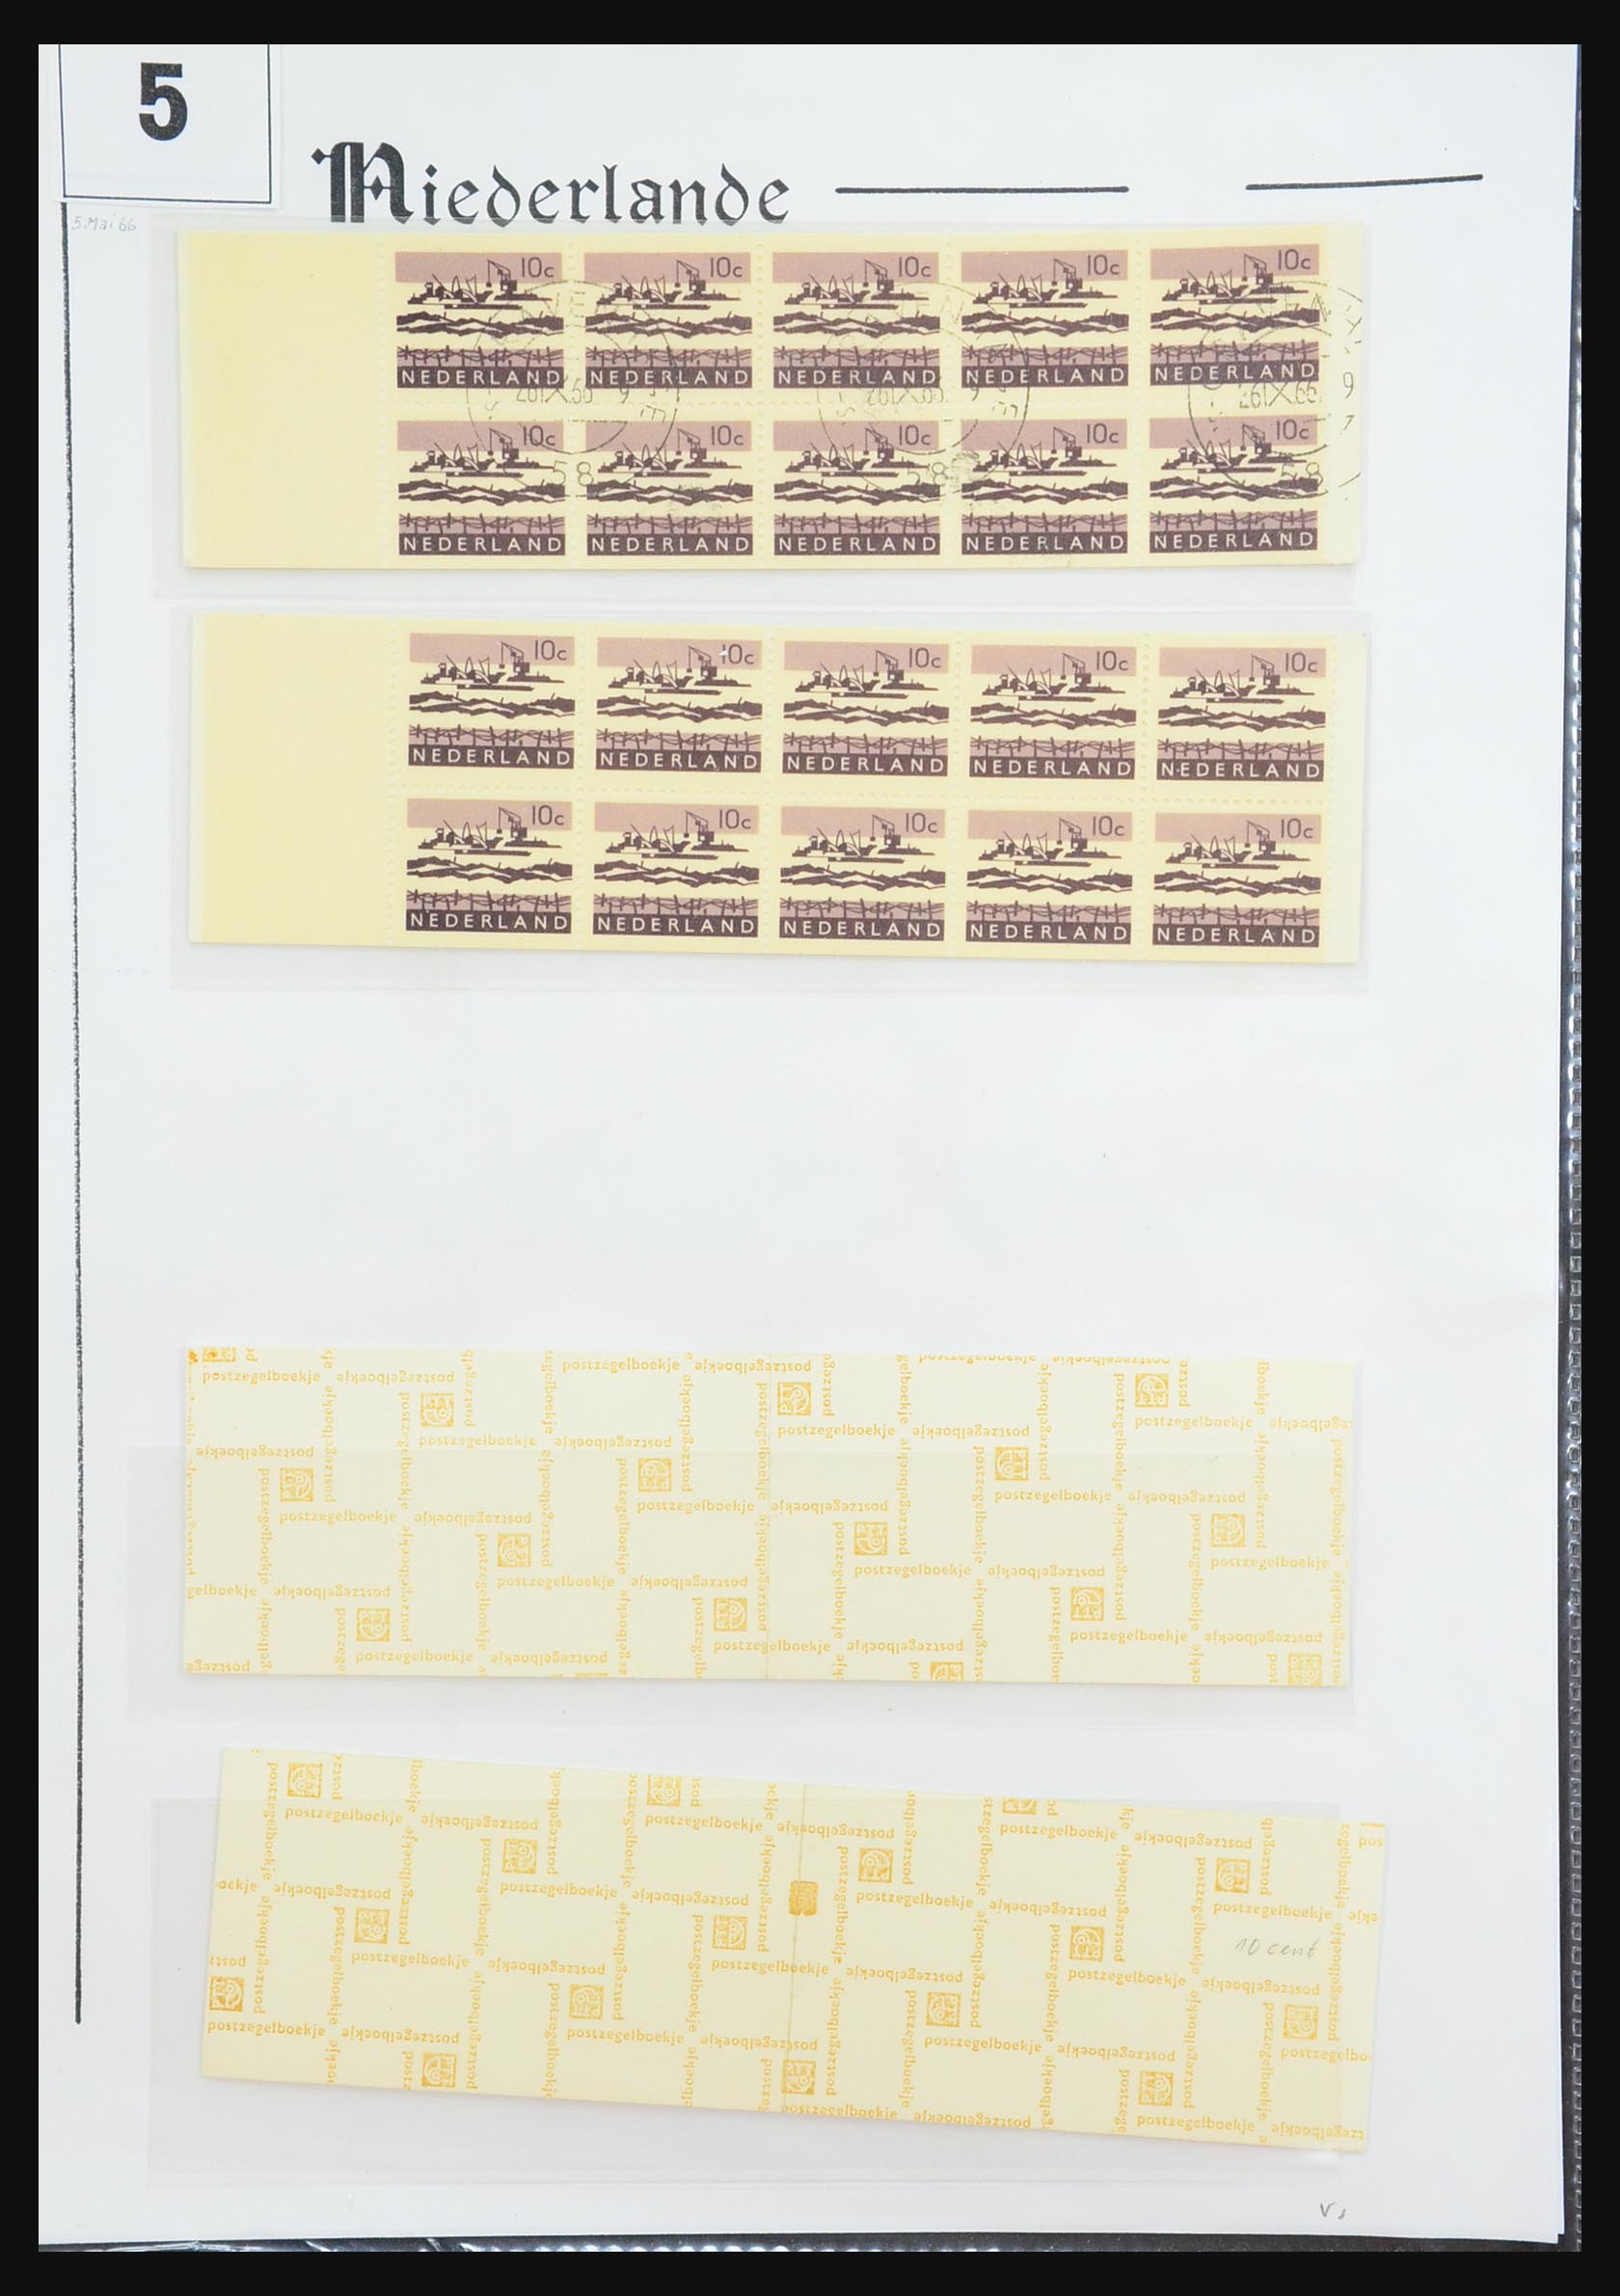 31311 009 - 31311 Netherlands stamp booklets 1964-1994.